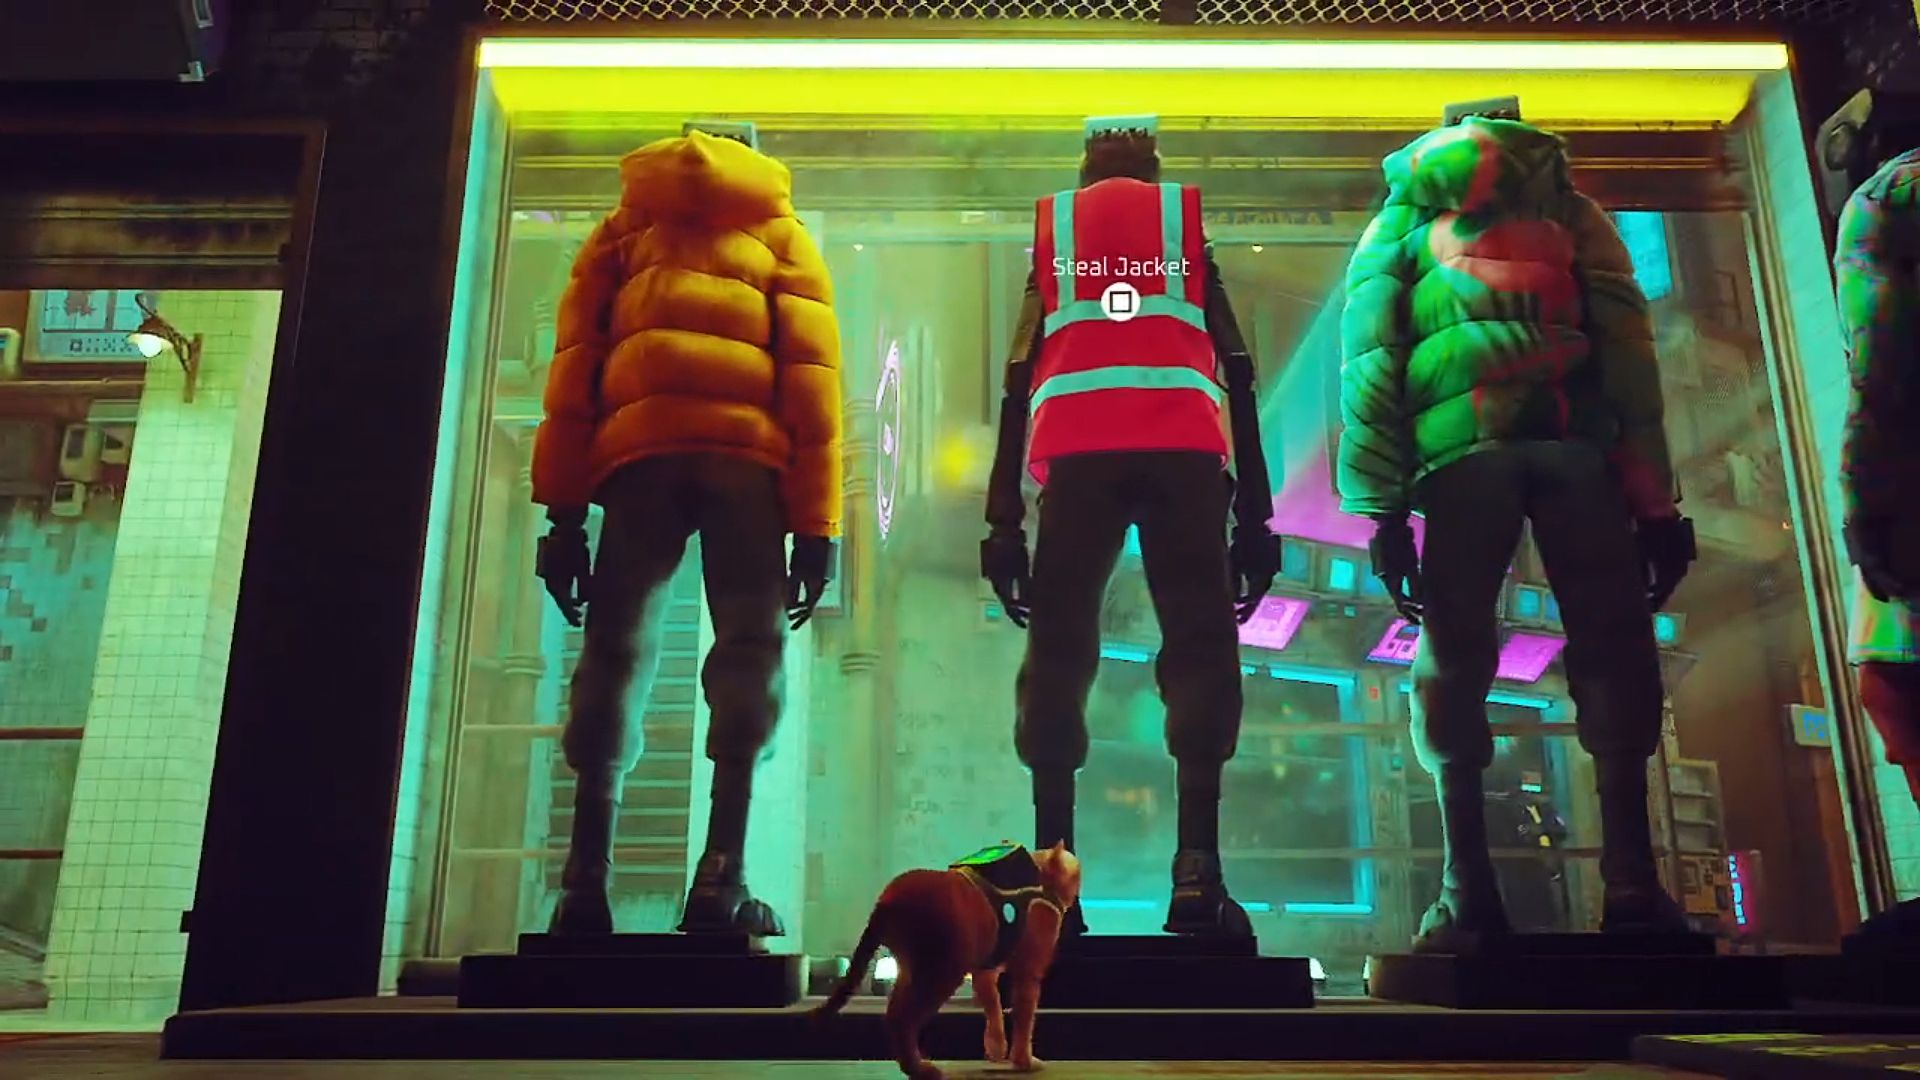 Veste de travailleurs errants: Trois mannequins dans la fenêtre de la boutique de vêtements de Midtown, dont deux portent des vestes bouffantes en jaune et vert tandis que le mannequin central arbore la veste de travail rouge Hi-viz